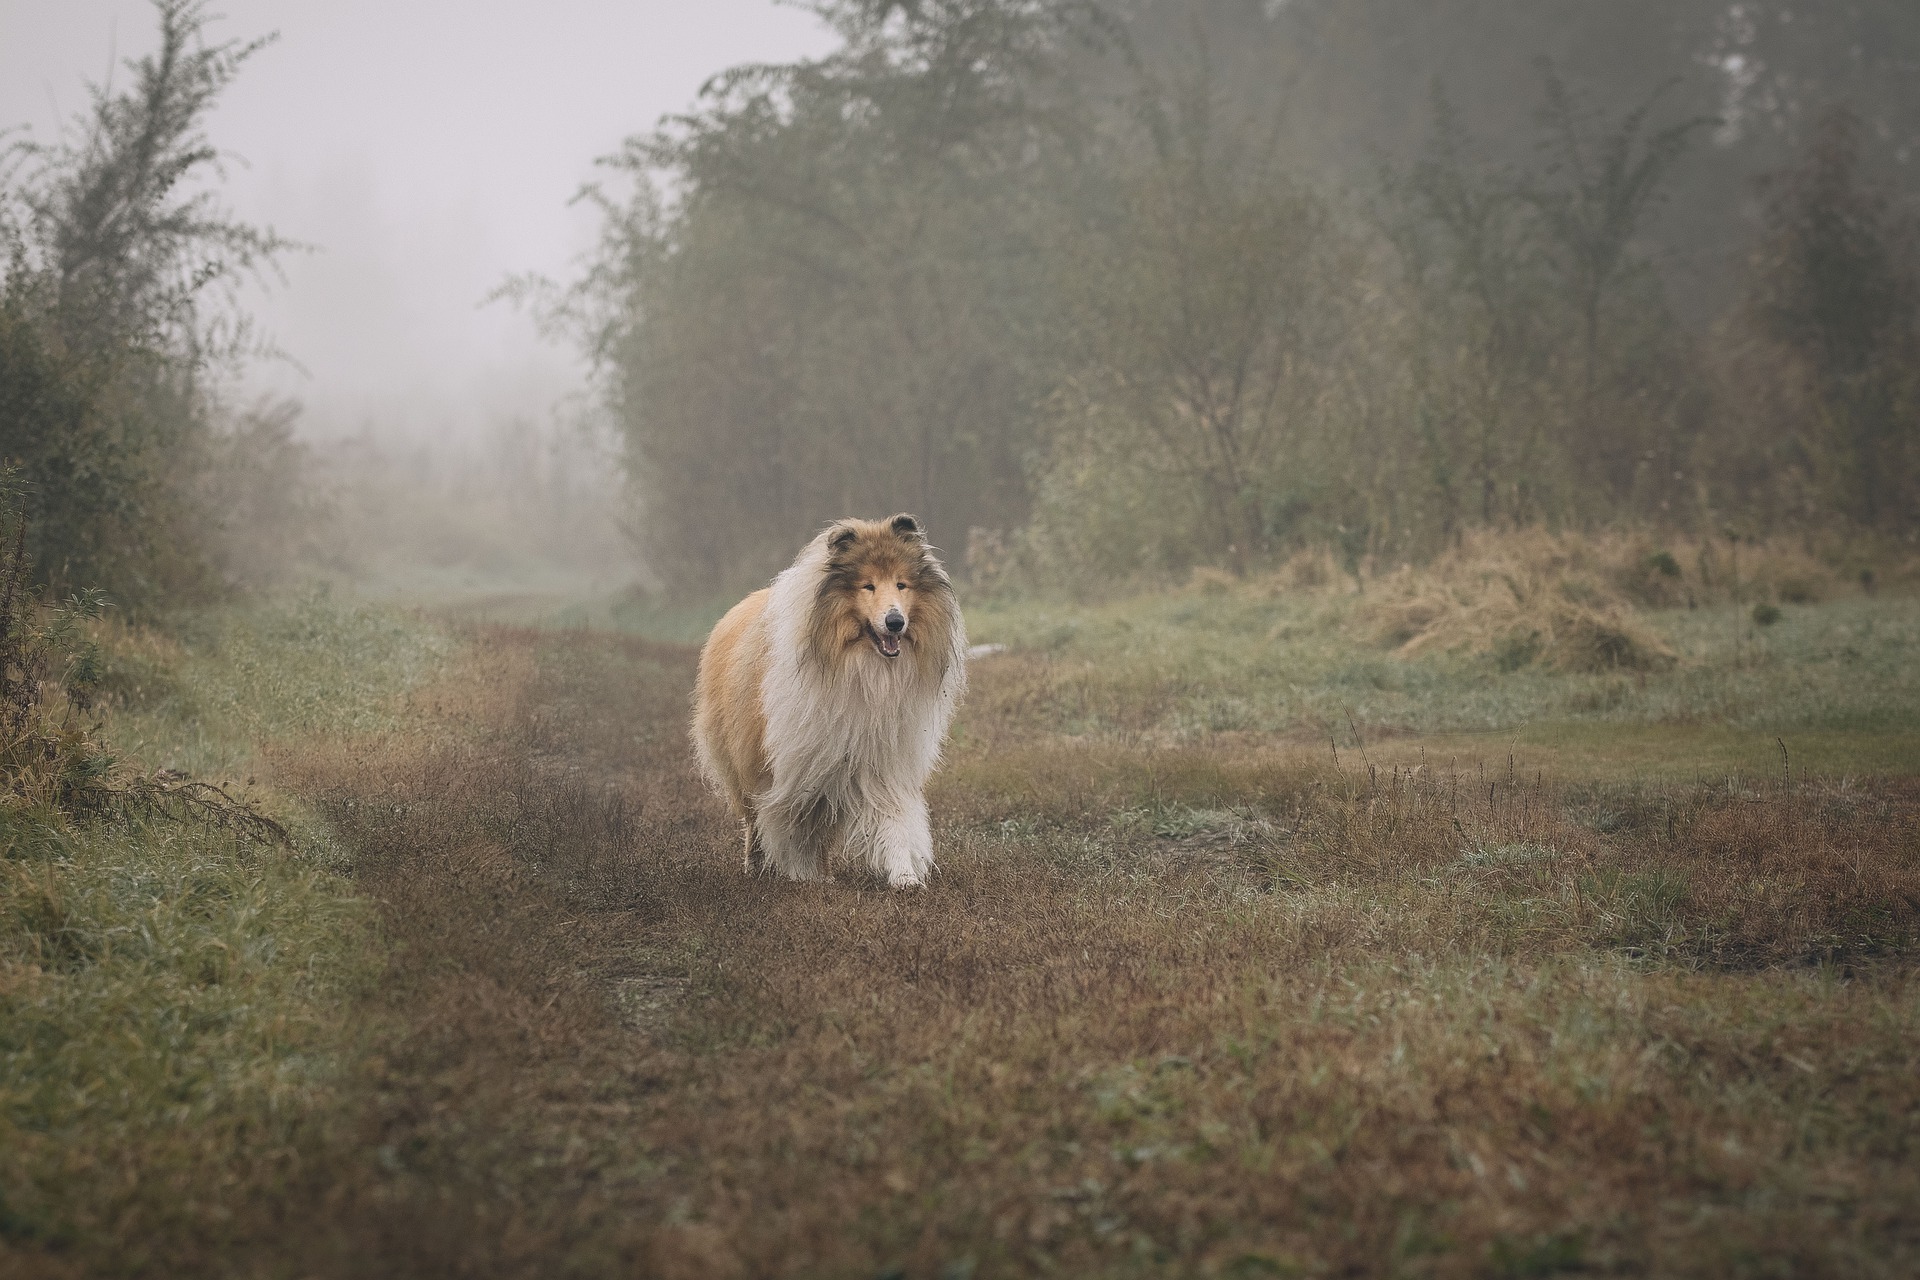 Škotijos aviganis, kaip ir romano Lassie herojus, buvo ištikimas ir šeimos šuo. Ar jis tikrai toks? Sužinokite viską apie kolijų veislę.